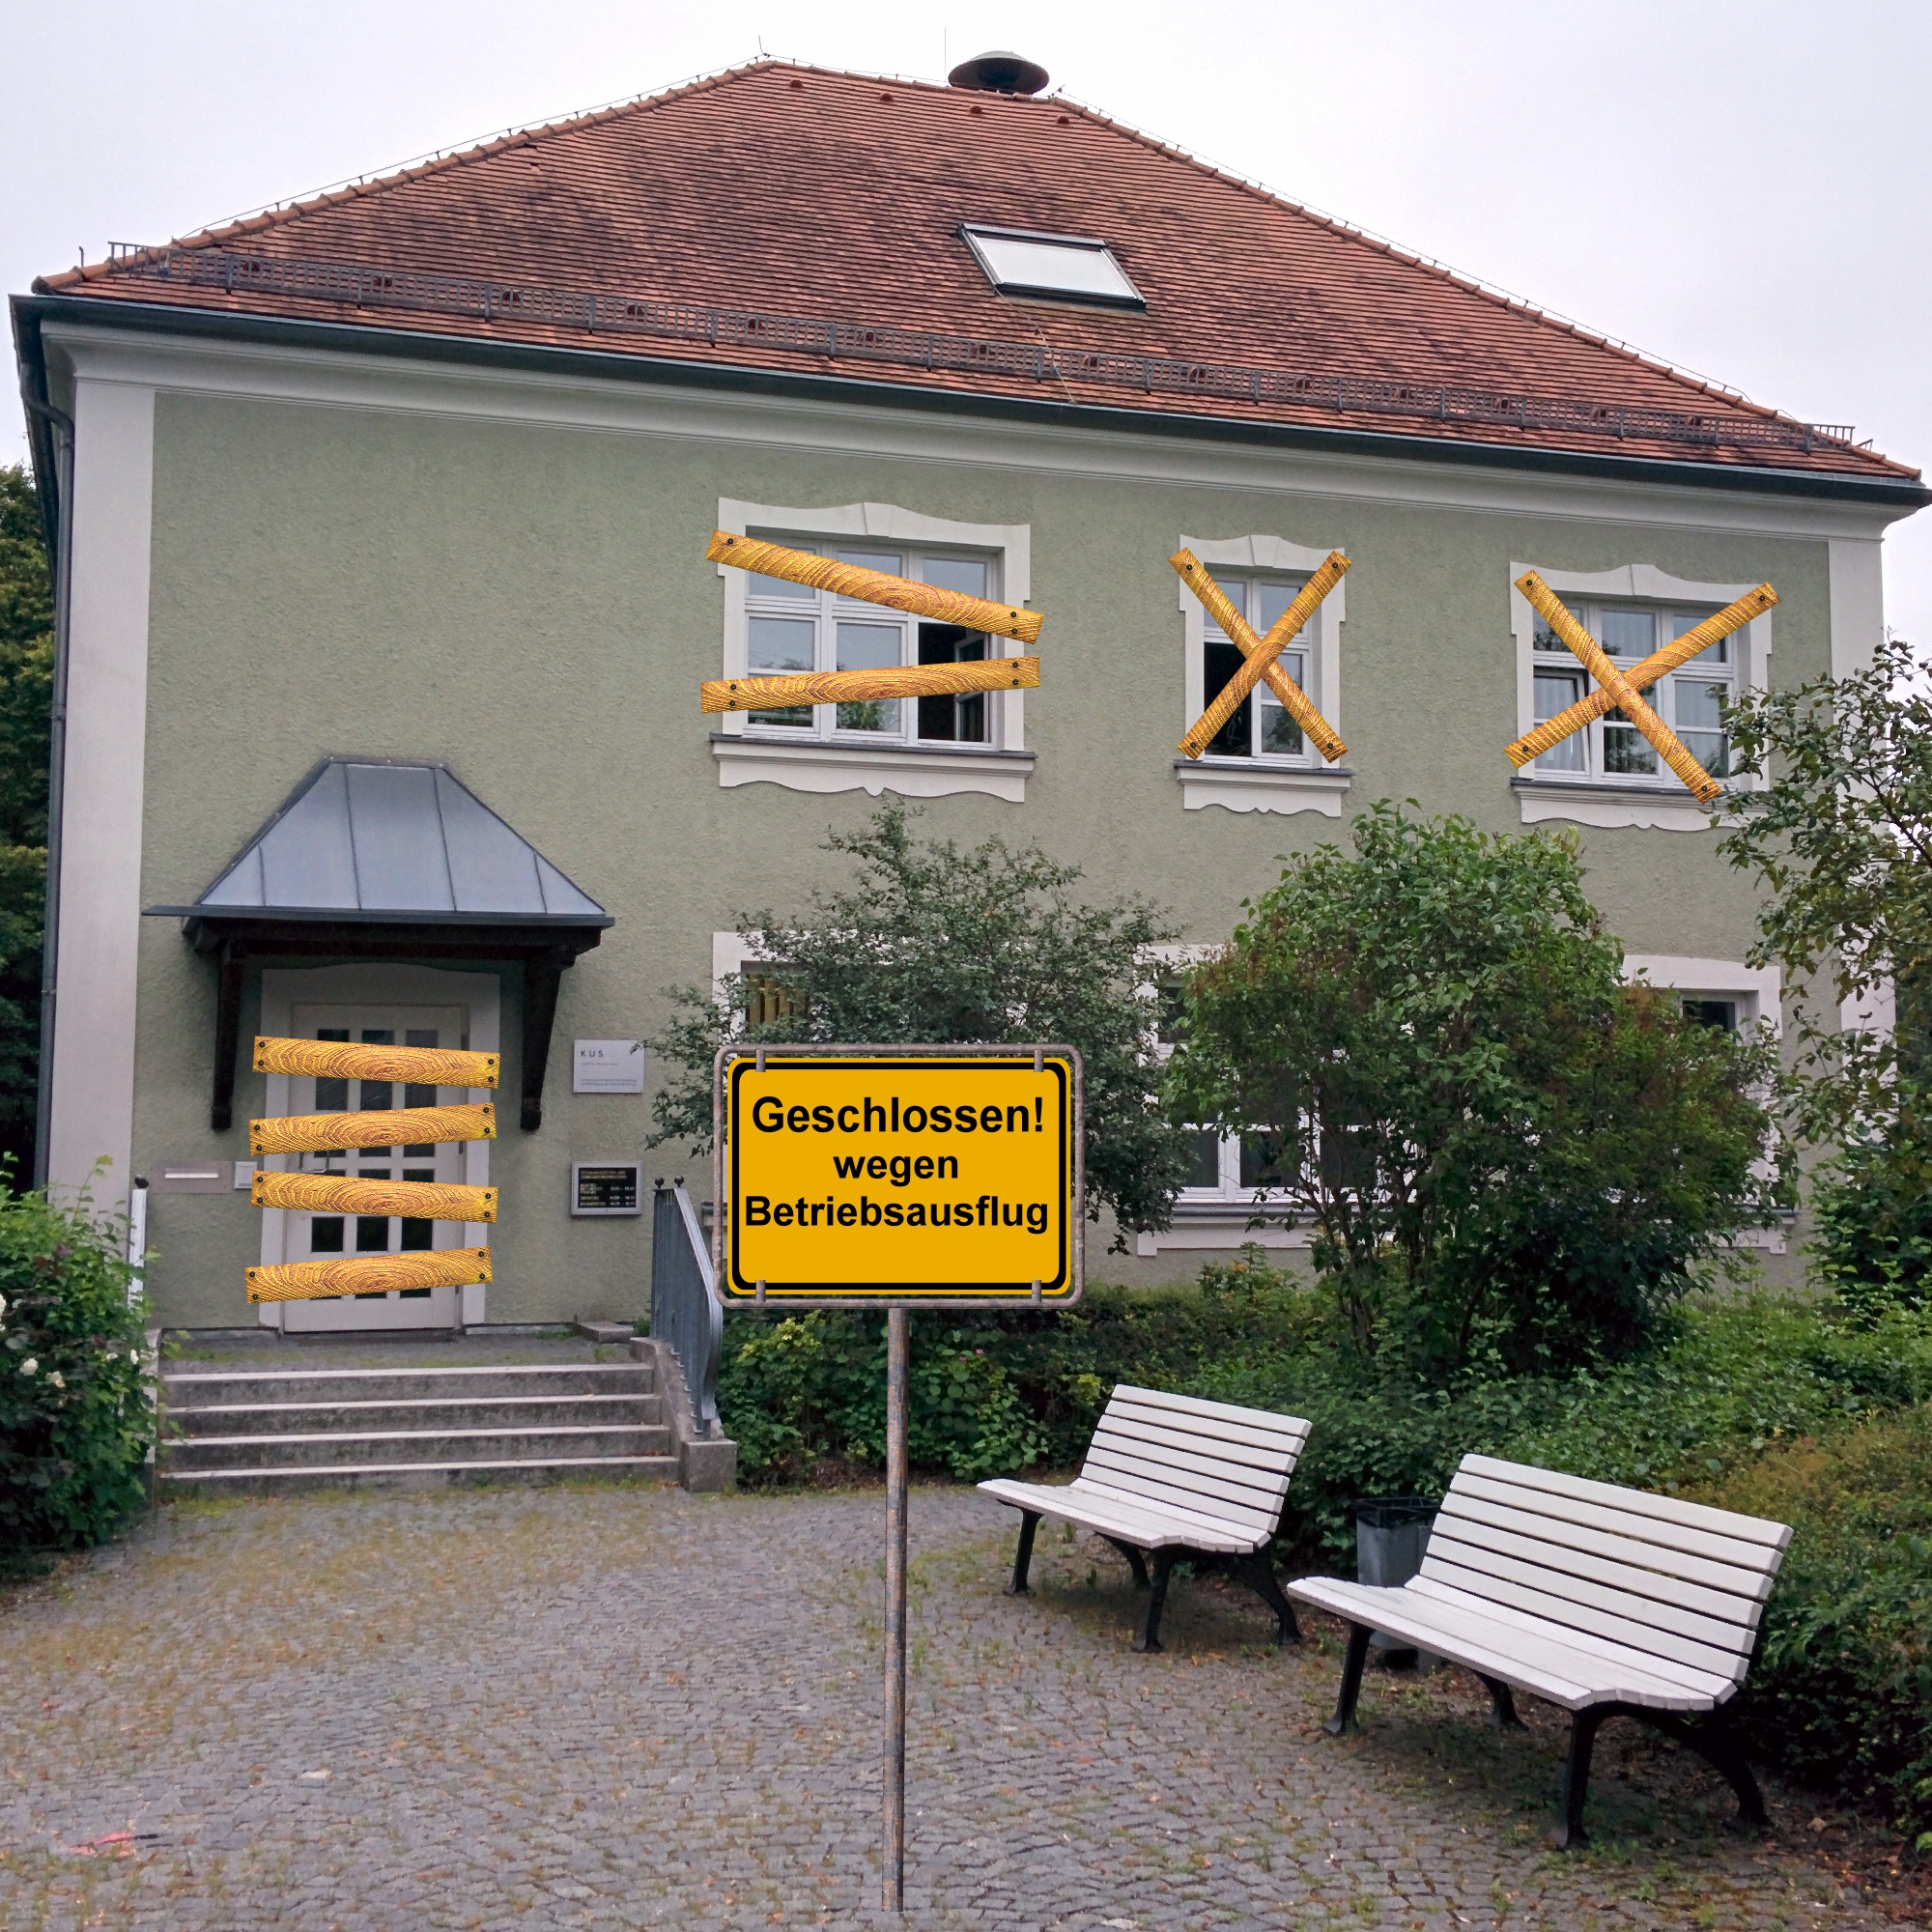 Rathaus am Montag, 30.05.2016 geschlossen wegen Betriebsausflug!